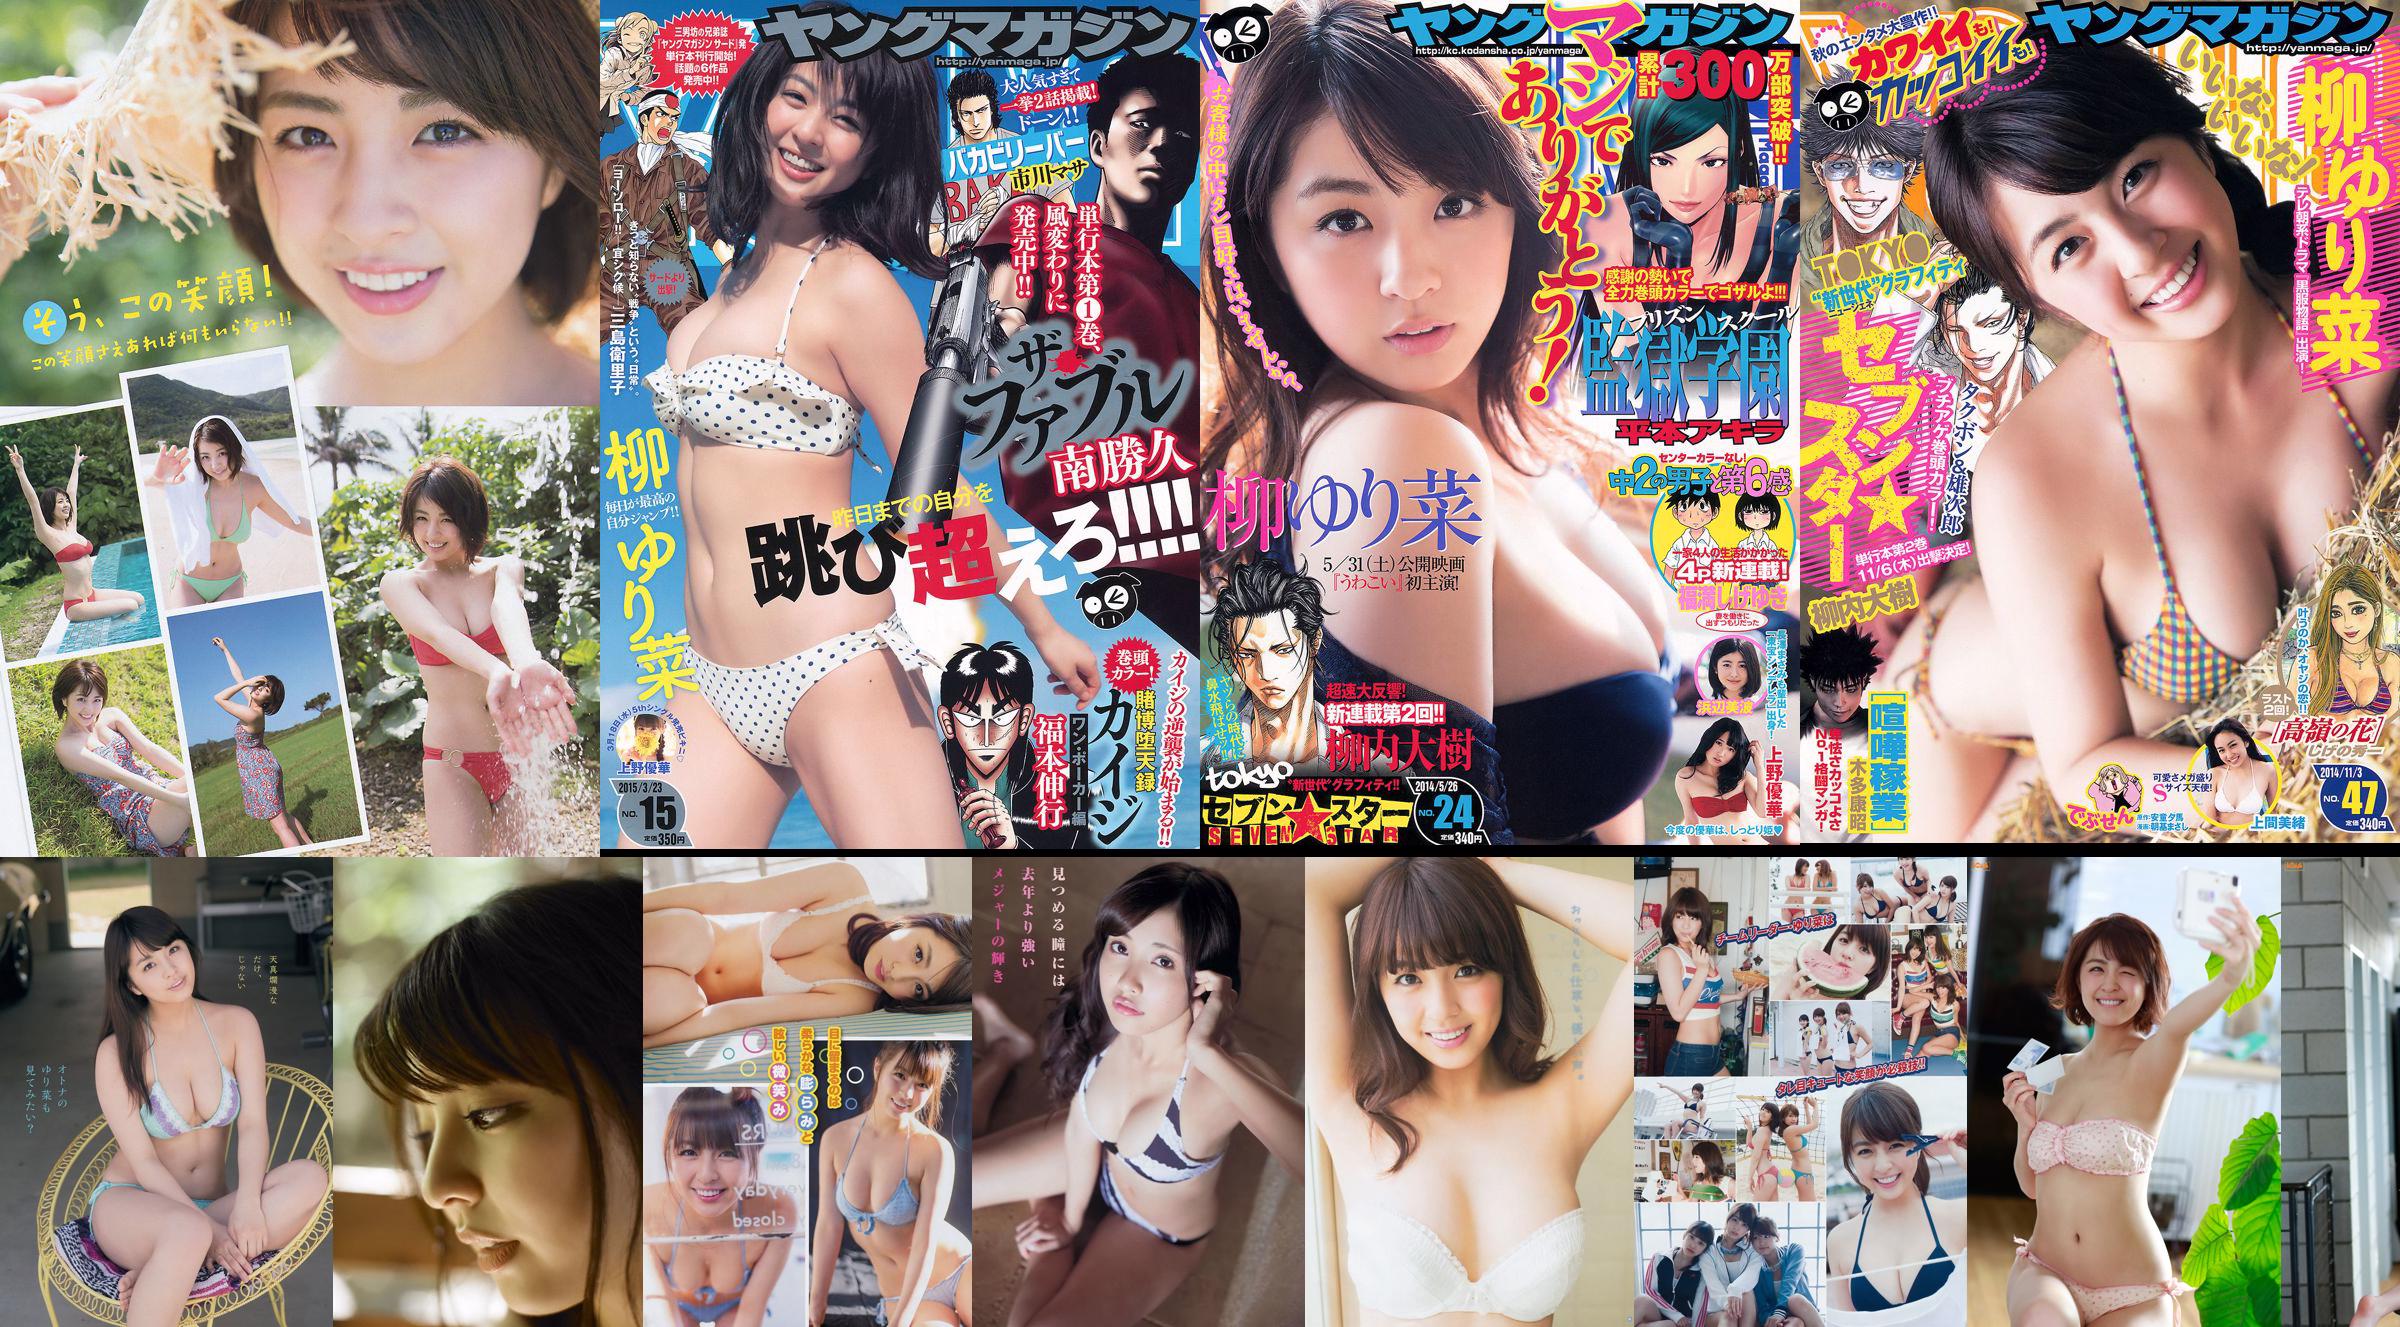 [週五] Yurina Yanagi“日本最美麗的胸像”圖片 No.875539 第1頁